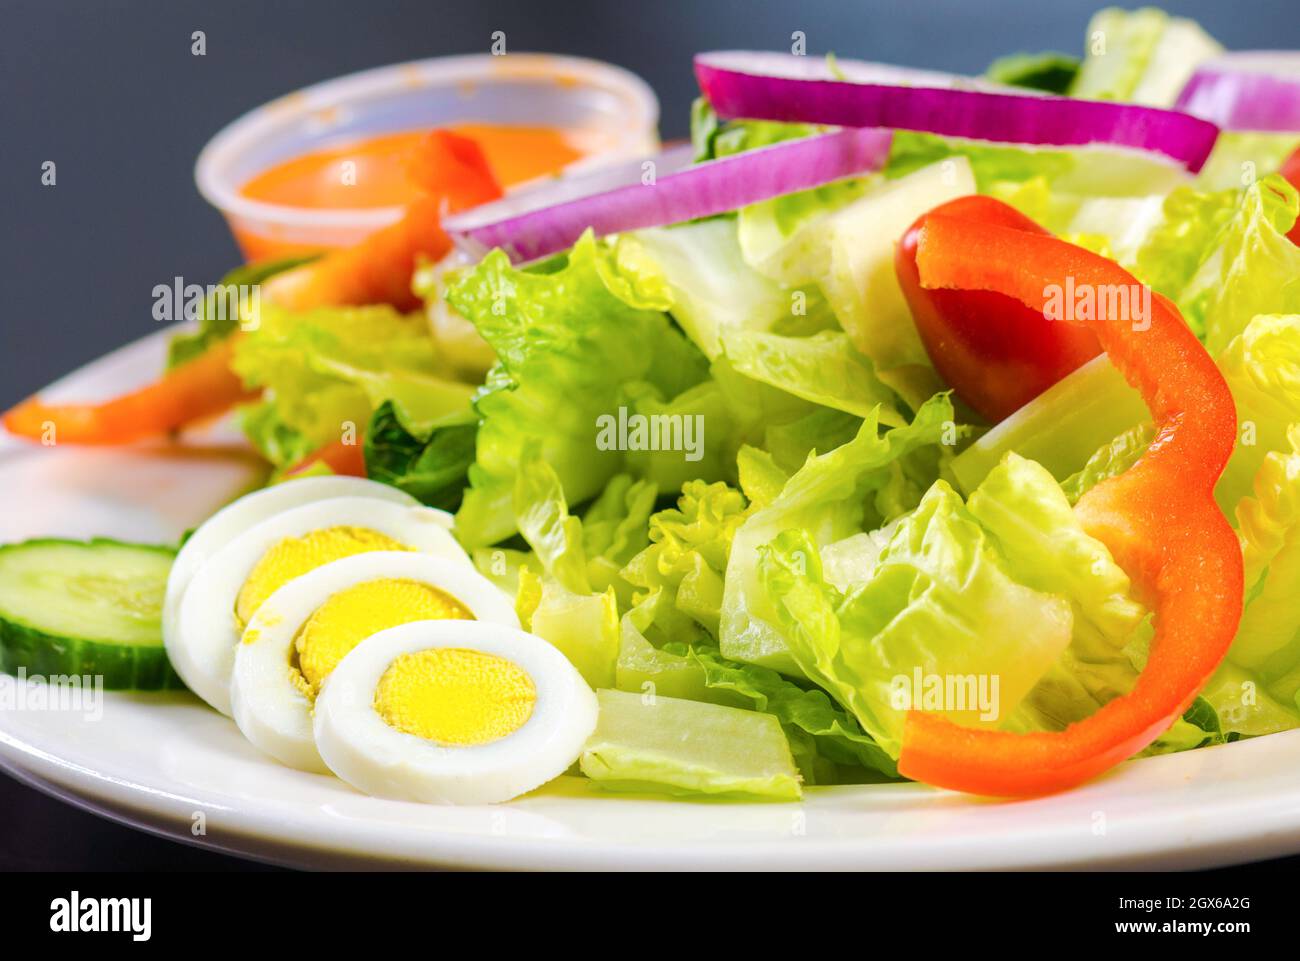 Salat mit einer Seite von vereierten Eiern. Auf einem Teller mit einer kleinen Tasse Dressing sitzen weiße und gelbe Eier. Daneben ist ein Salat gemacht Stockfoto